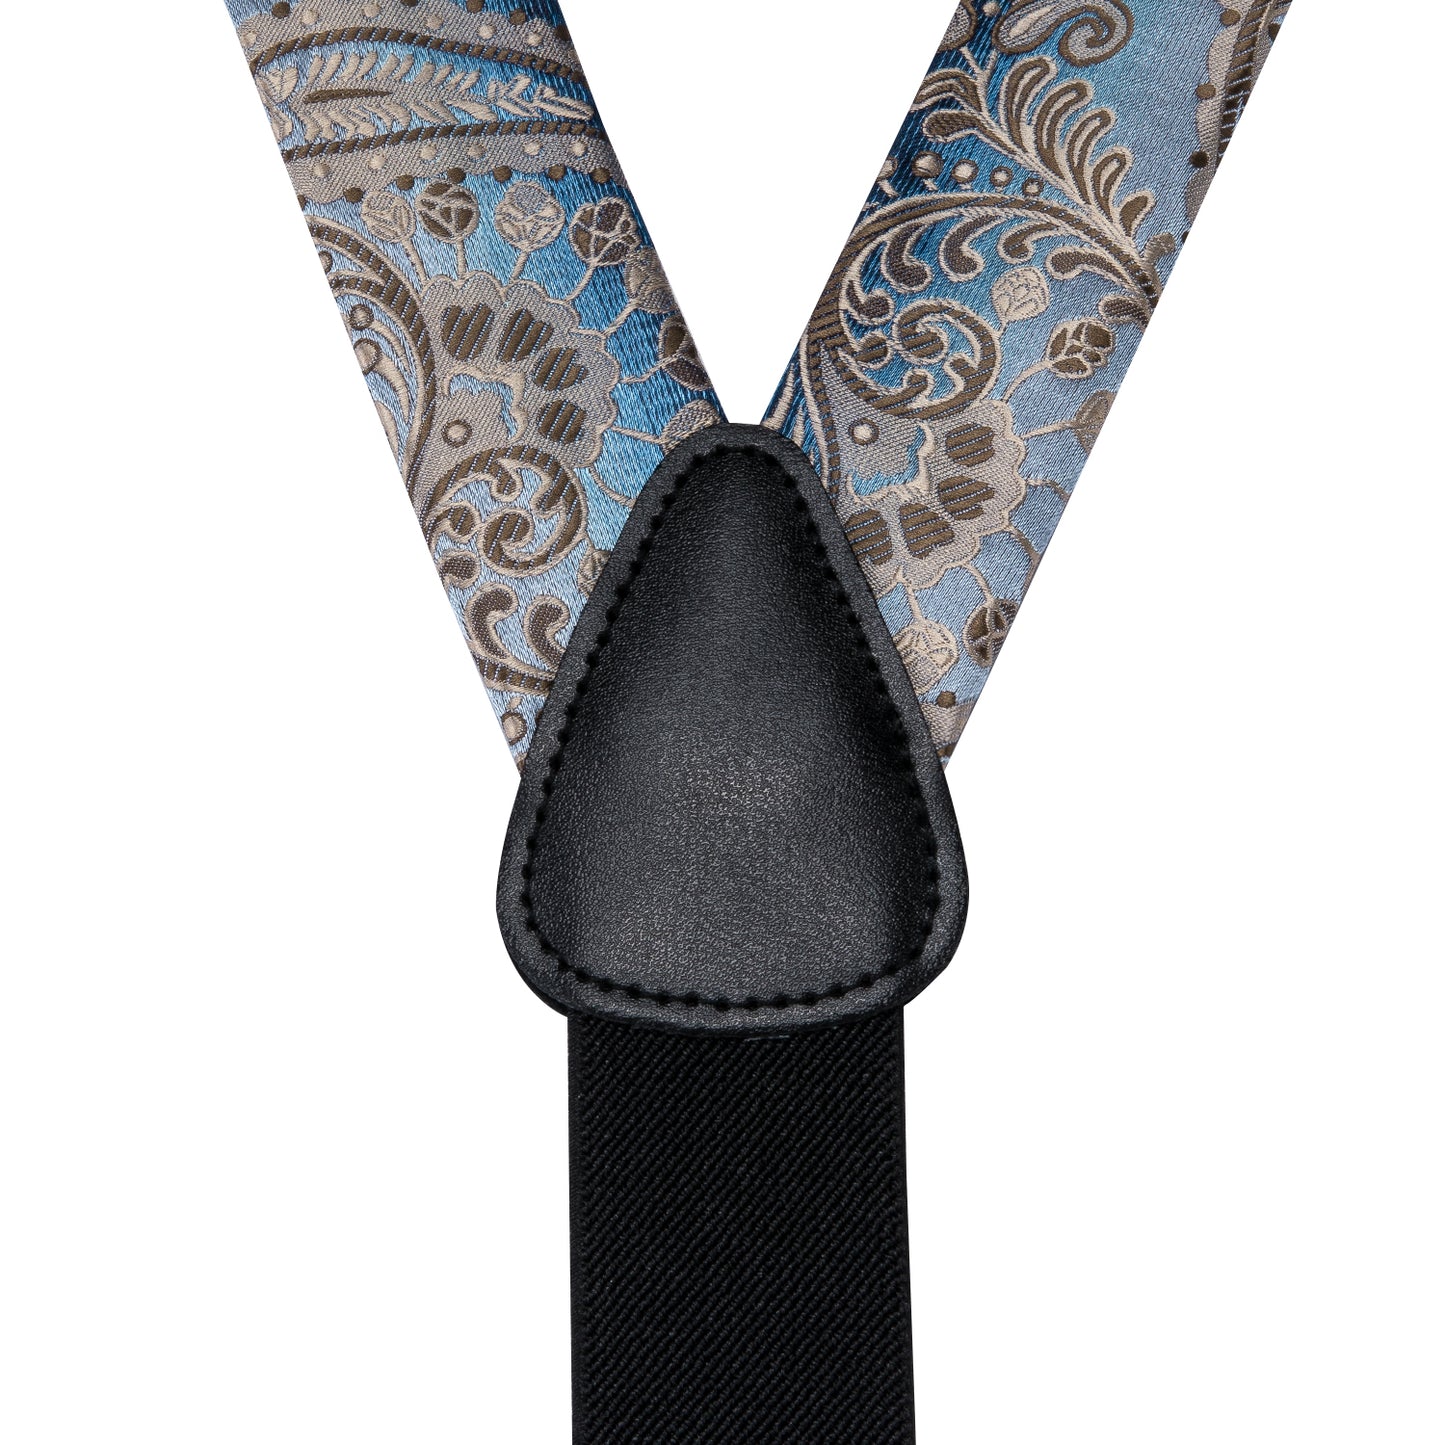 BD3017 Men's Braces Designer Clip Suspender Set [High Steel]